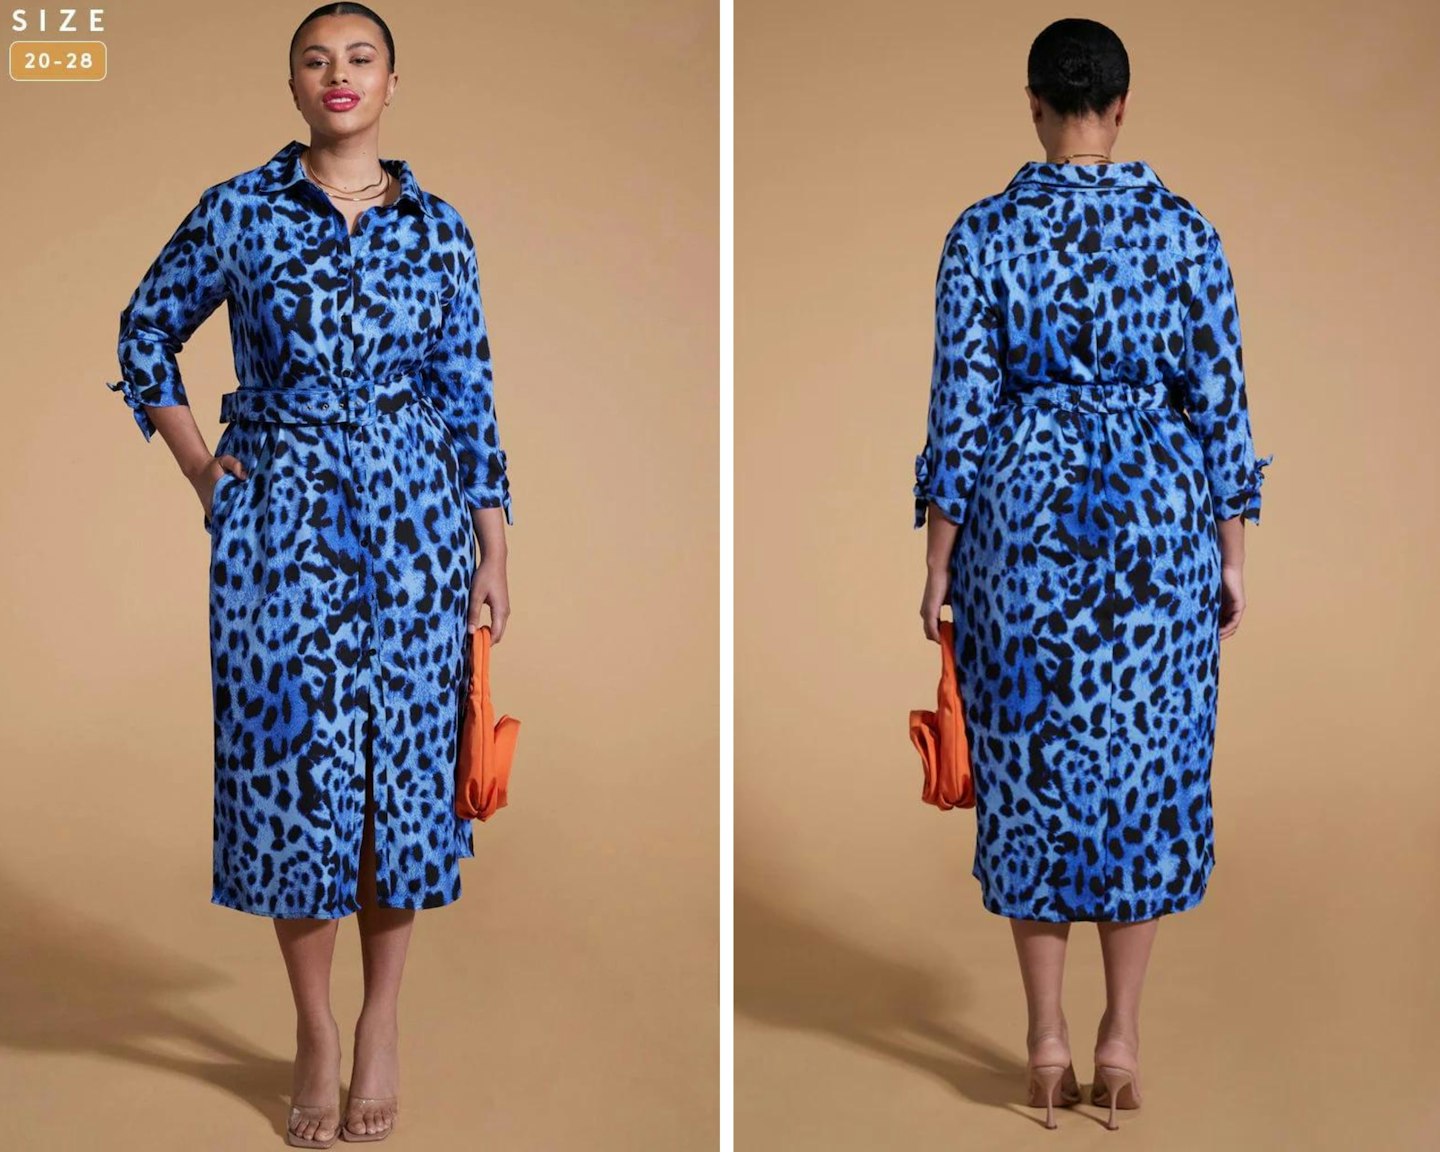 Alison's Leopard Print Dress Dupe